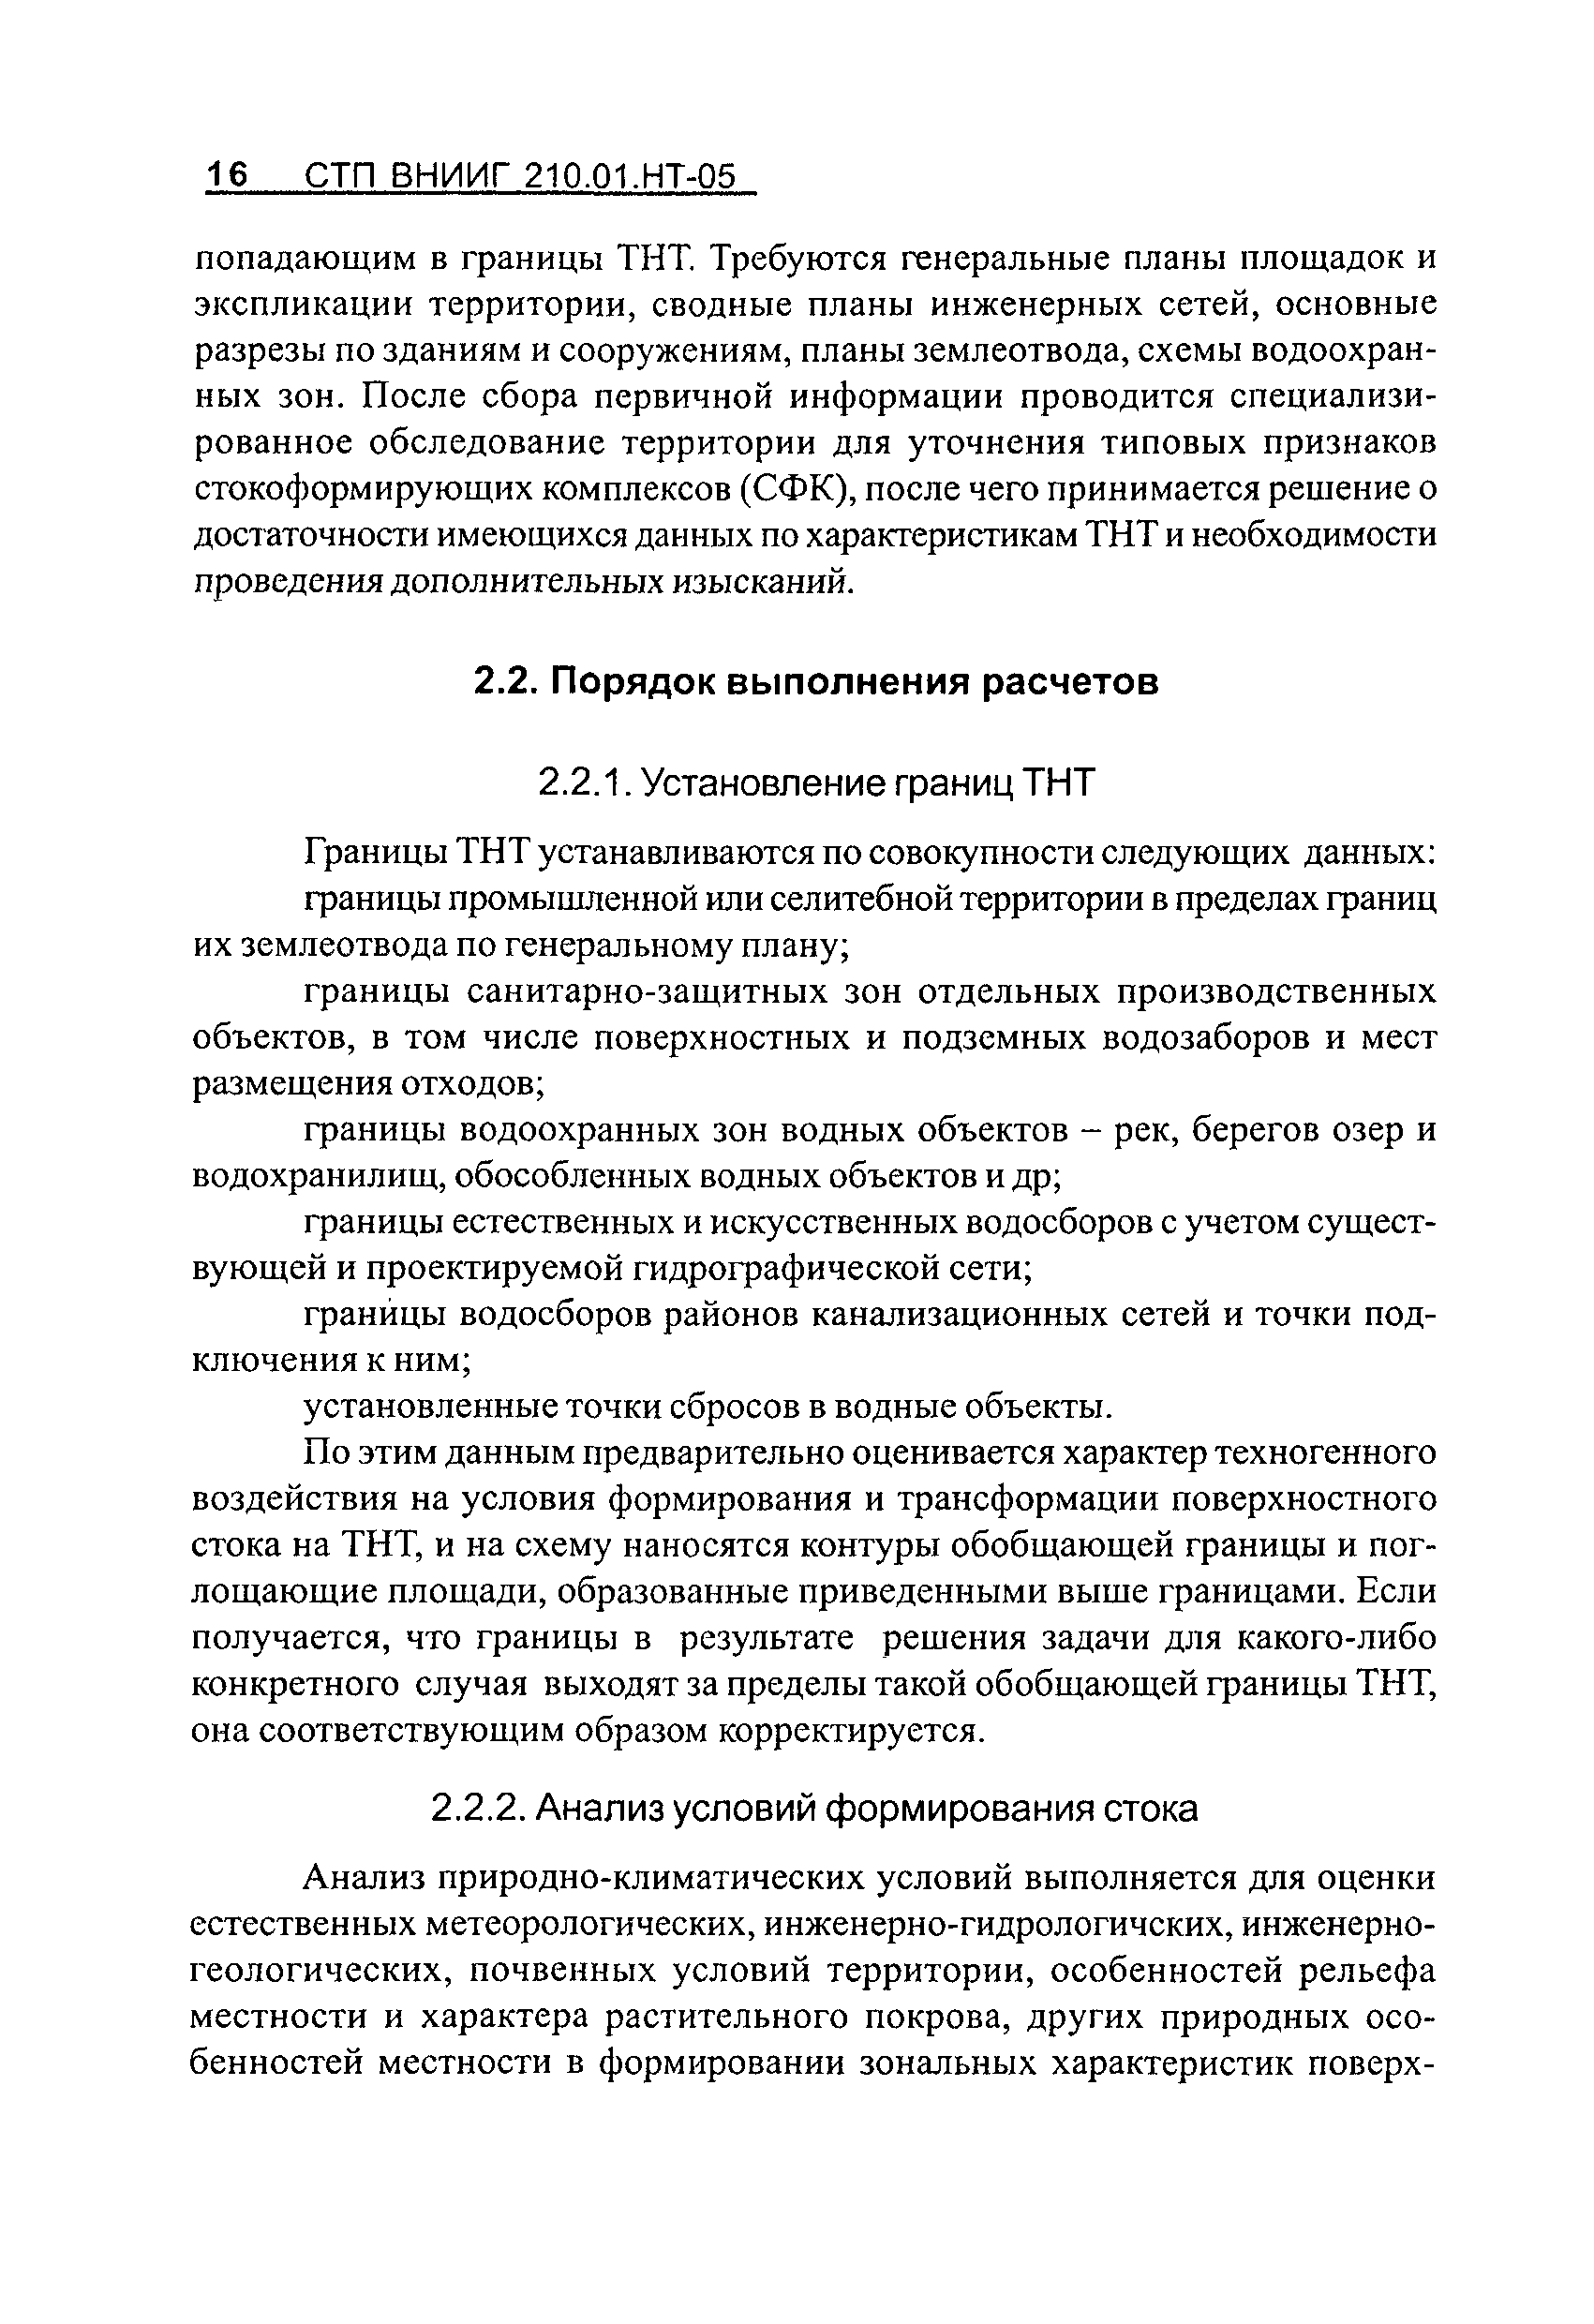 СТП ВНИИГ 210.01.НТ-05